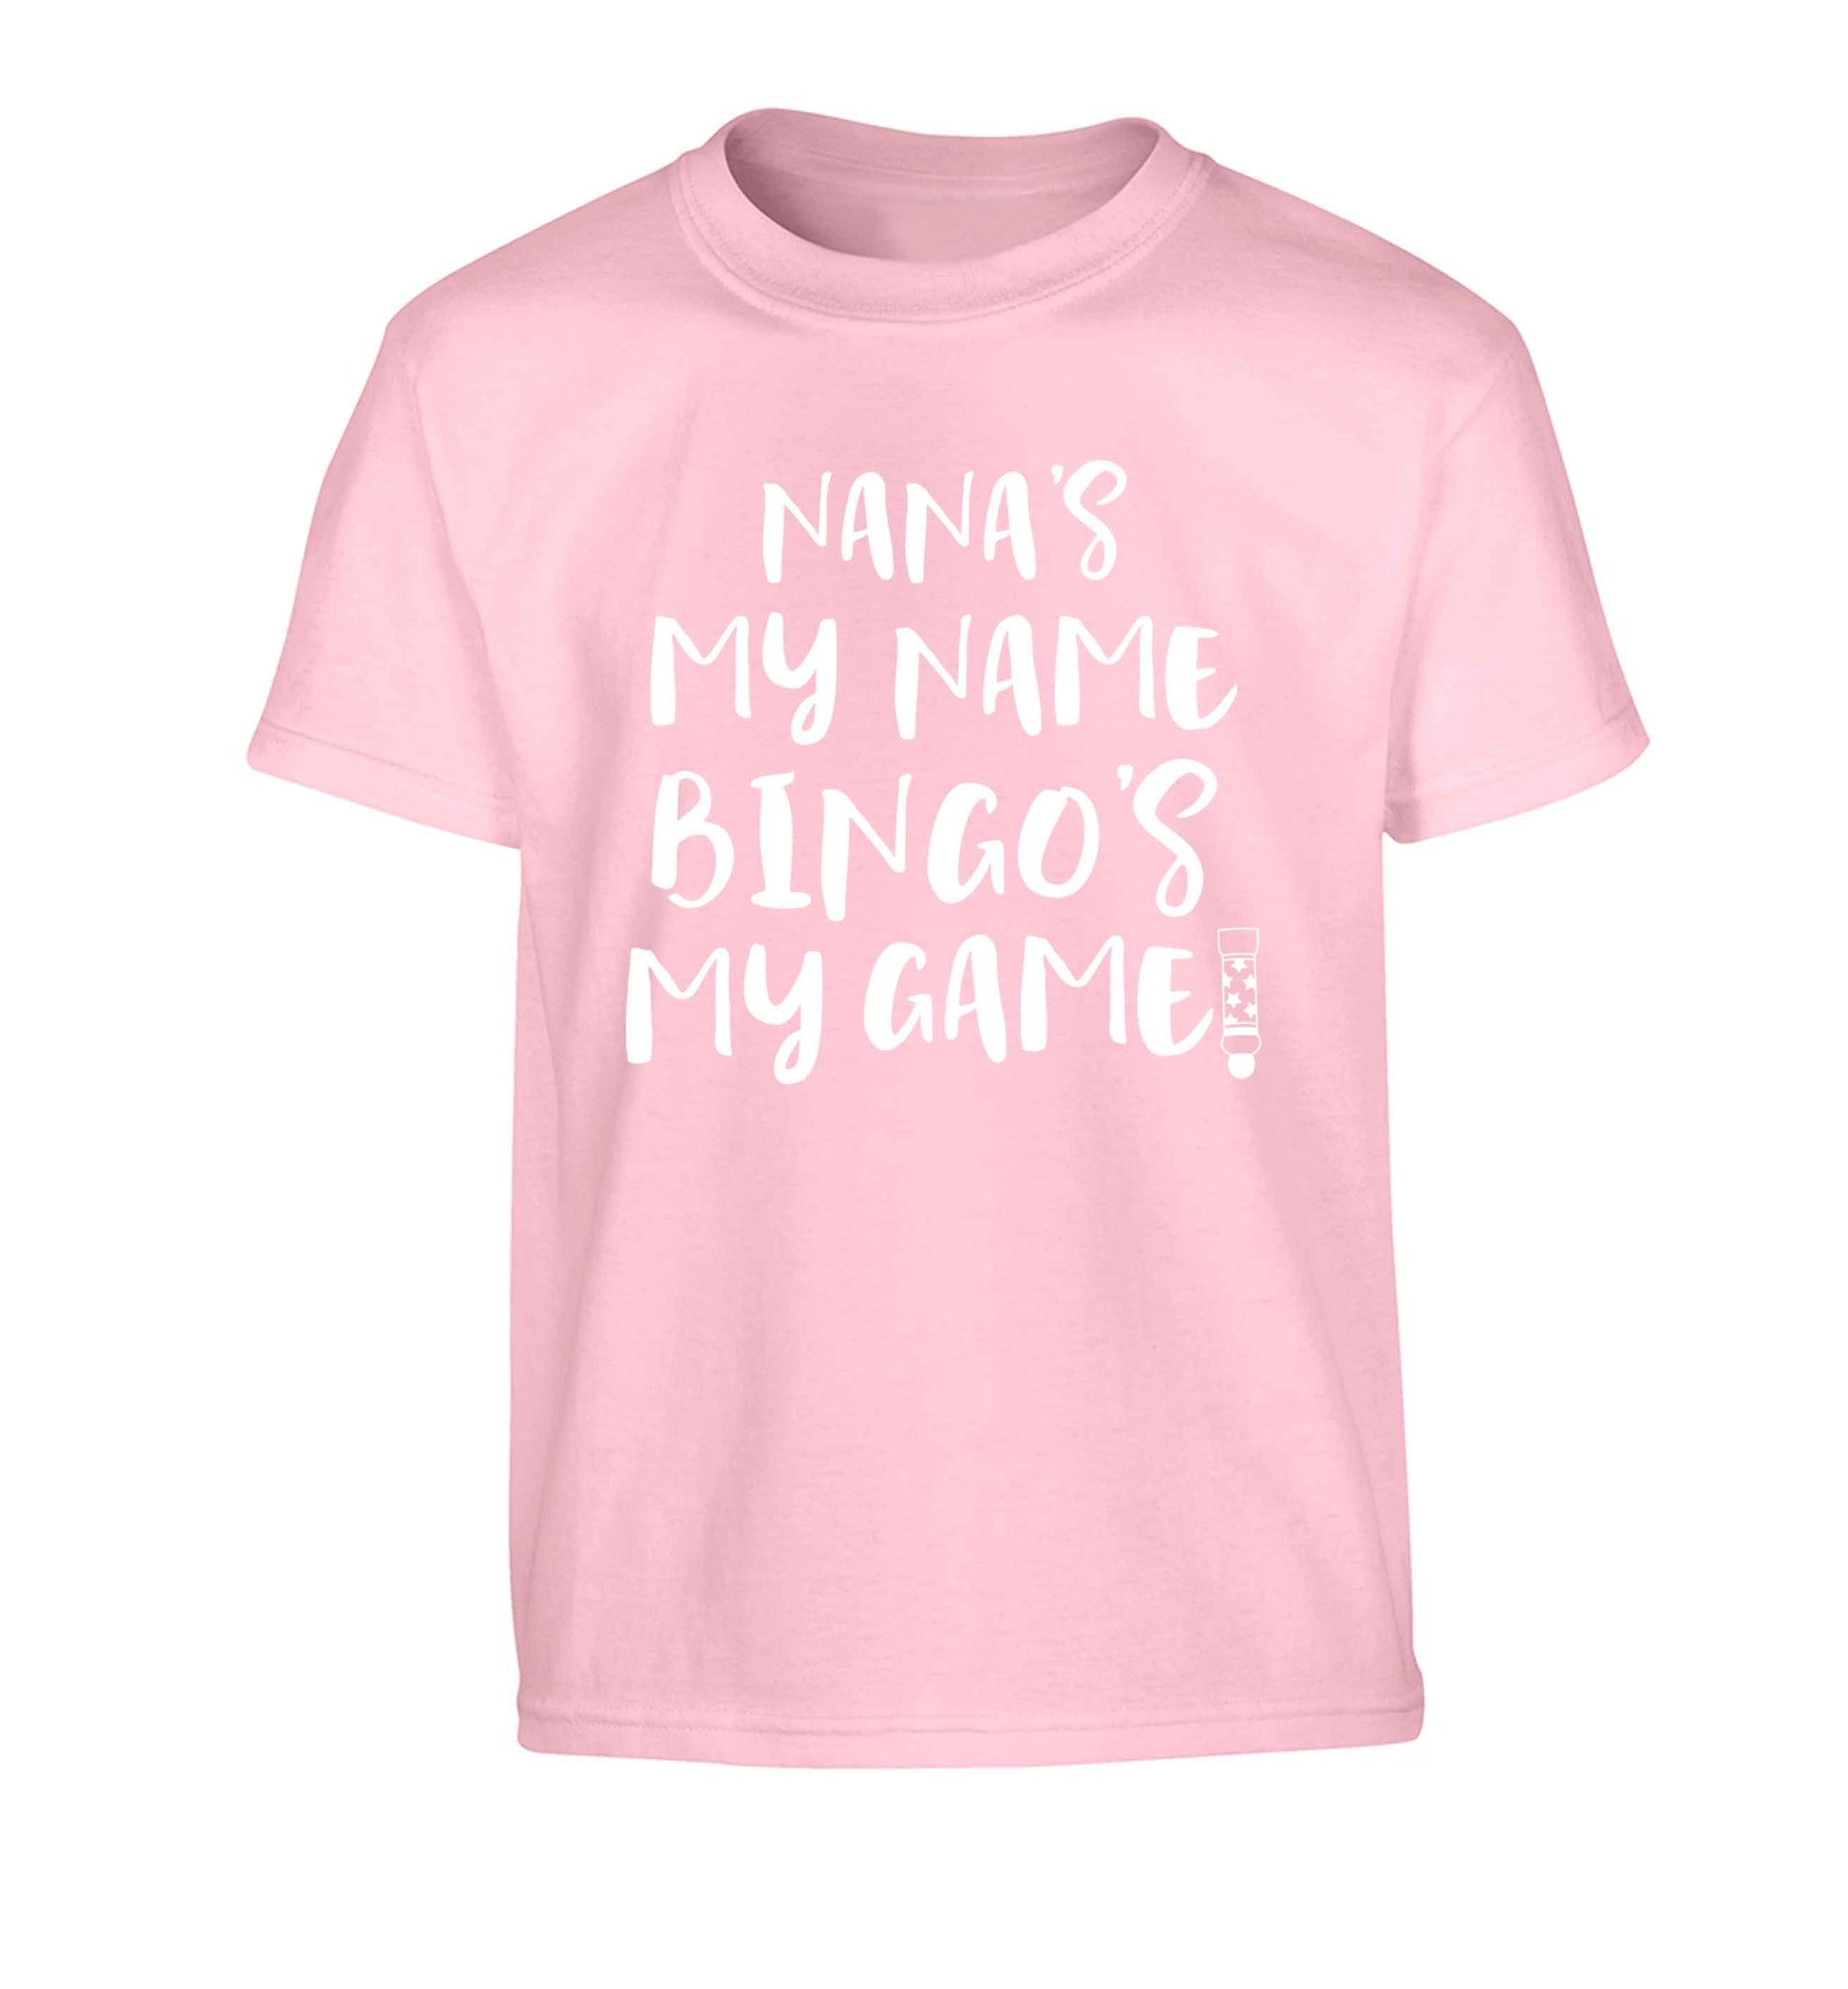 Nana's my name bingo's my game! Children's light pink Tshirt 12-13 Years